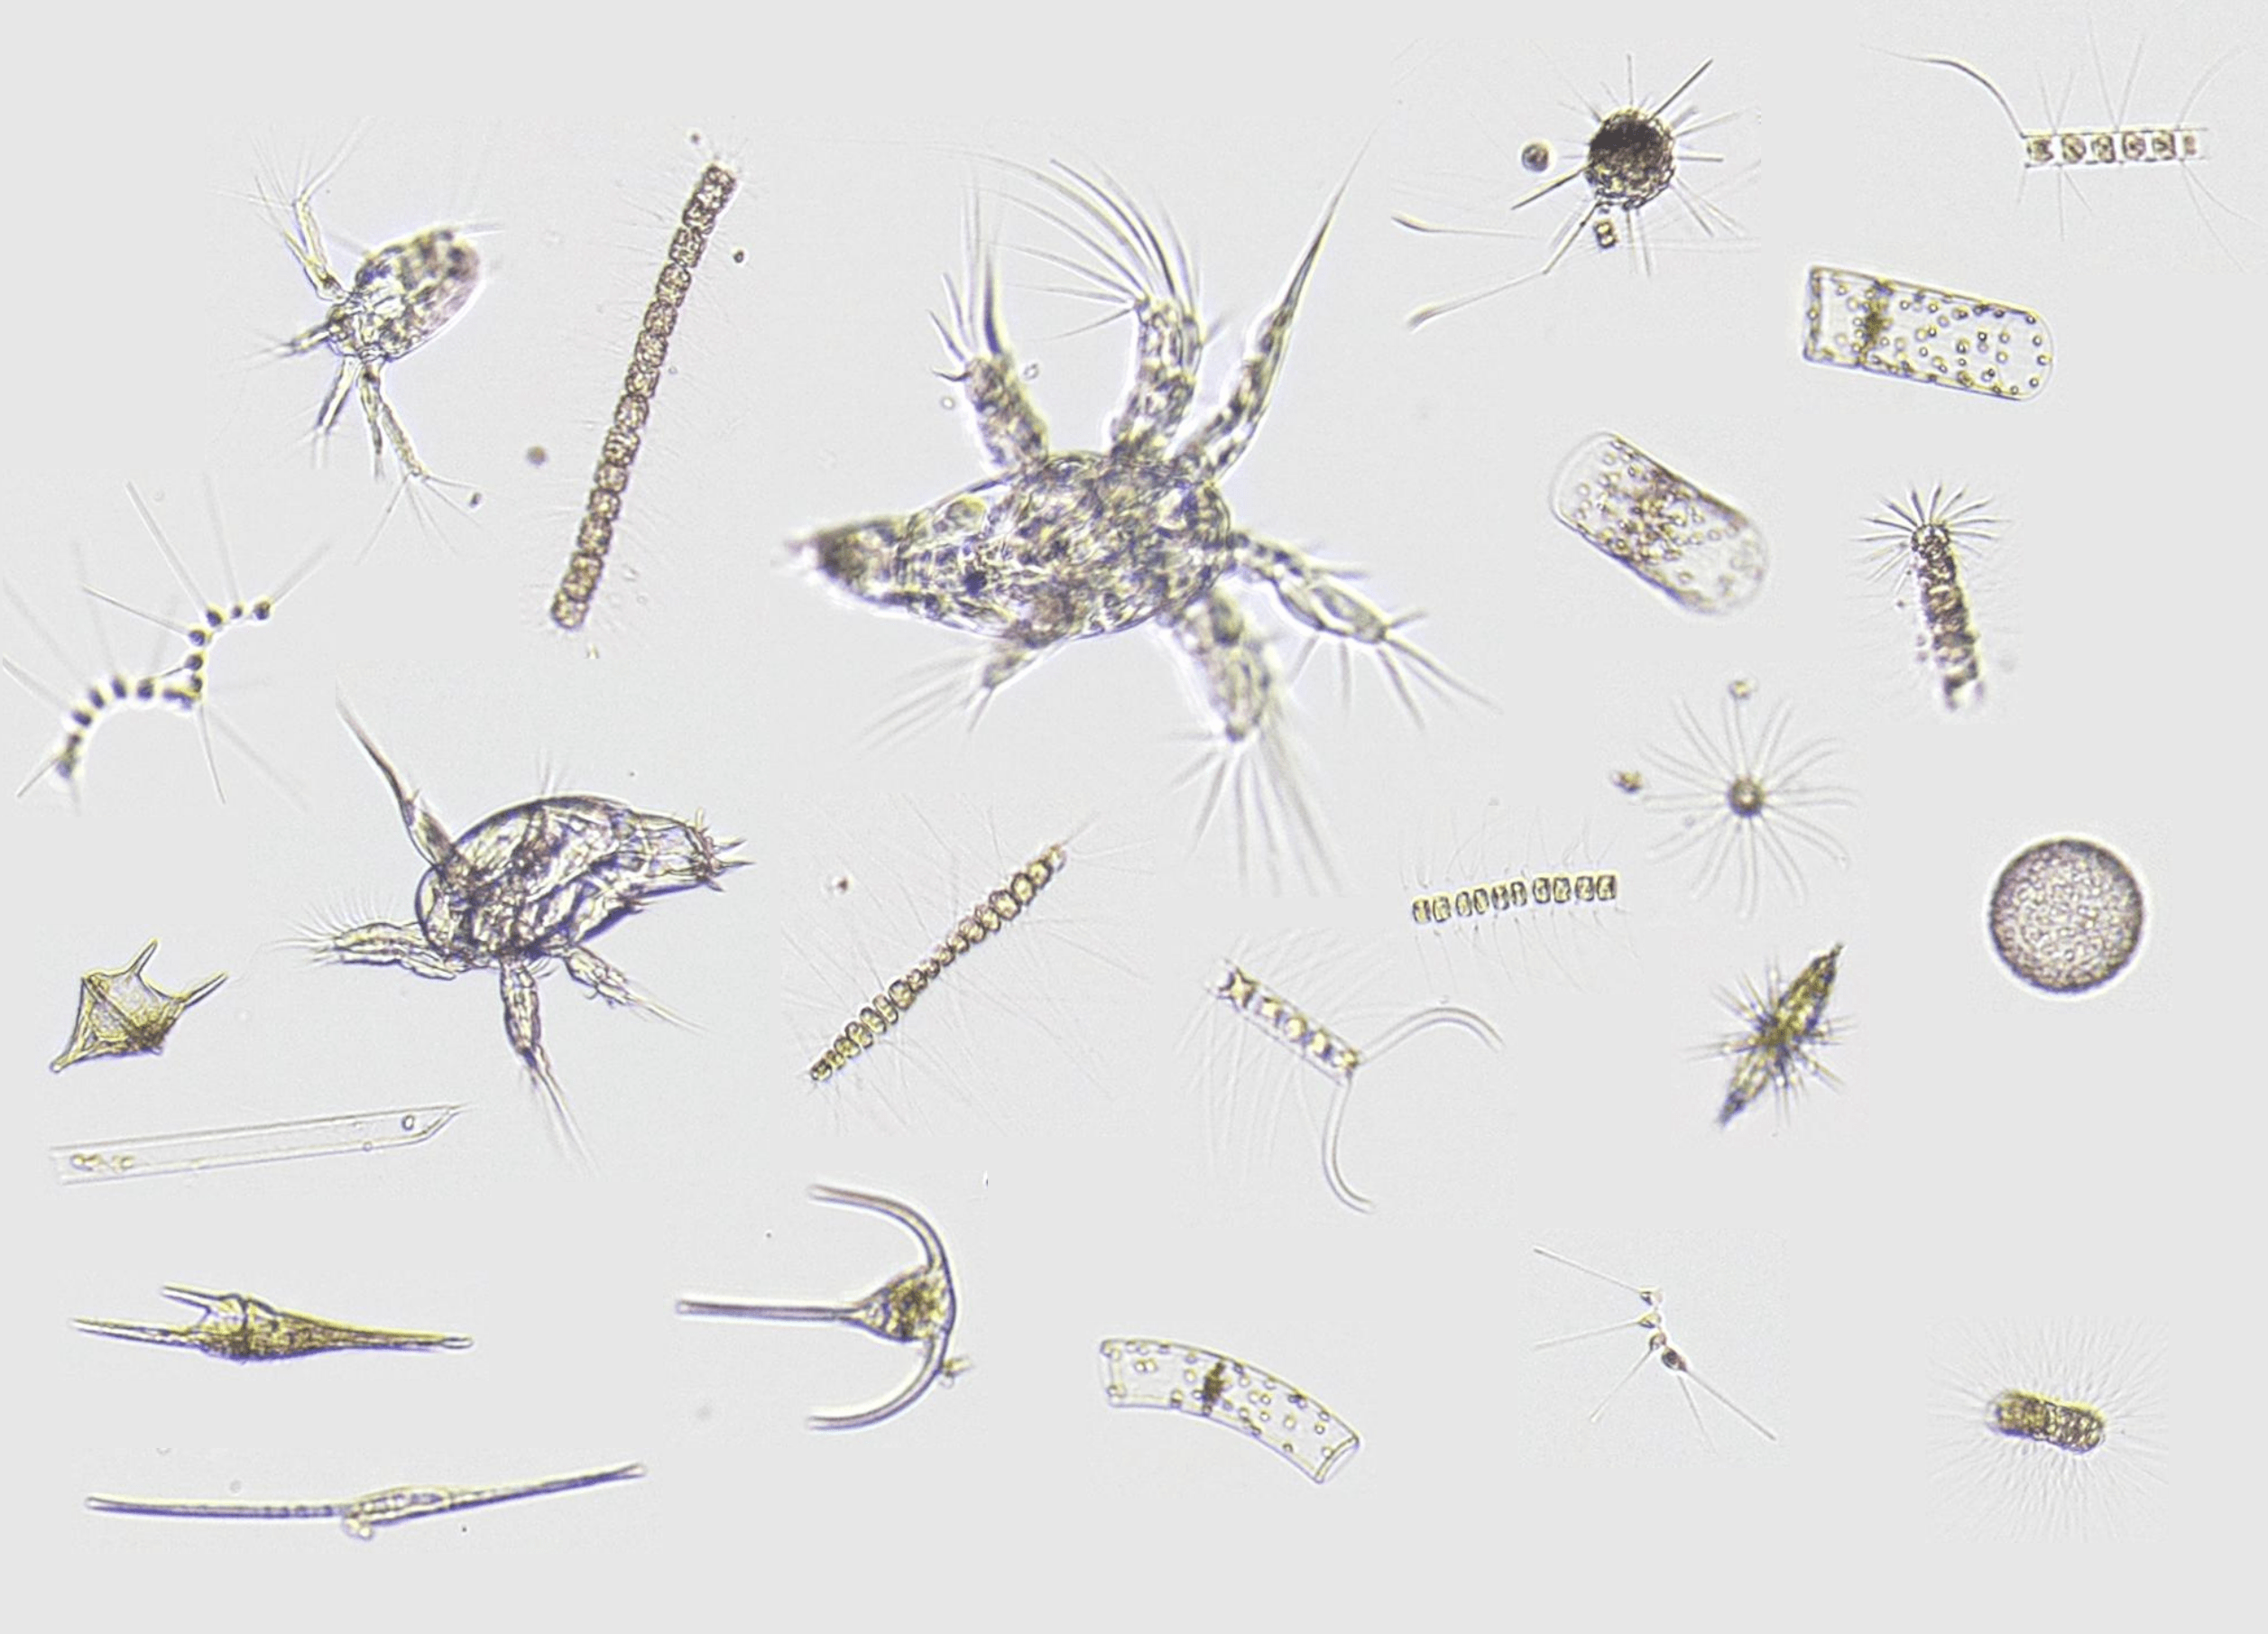 Quelques exemples de la diversité du plancton de Villefranche-sur-Mer obtenue dans quelques gouttes d’eau: copépodes adultes et juvéniles, ainsi que de nombreux protozoaires (diatomées, acanthaires et dinoflagellés)